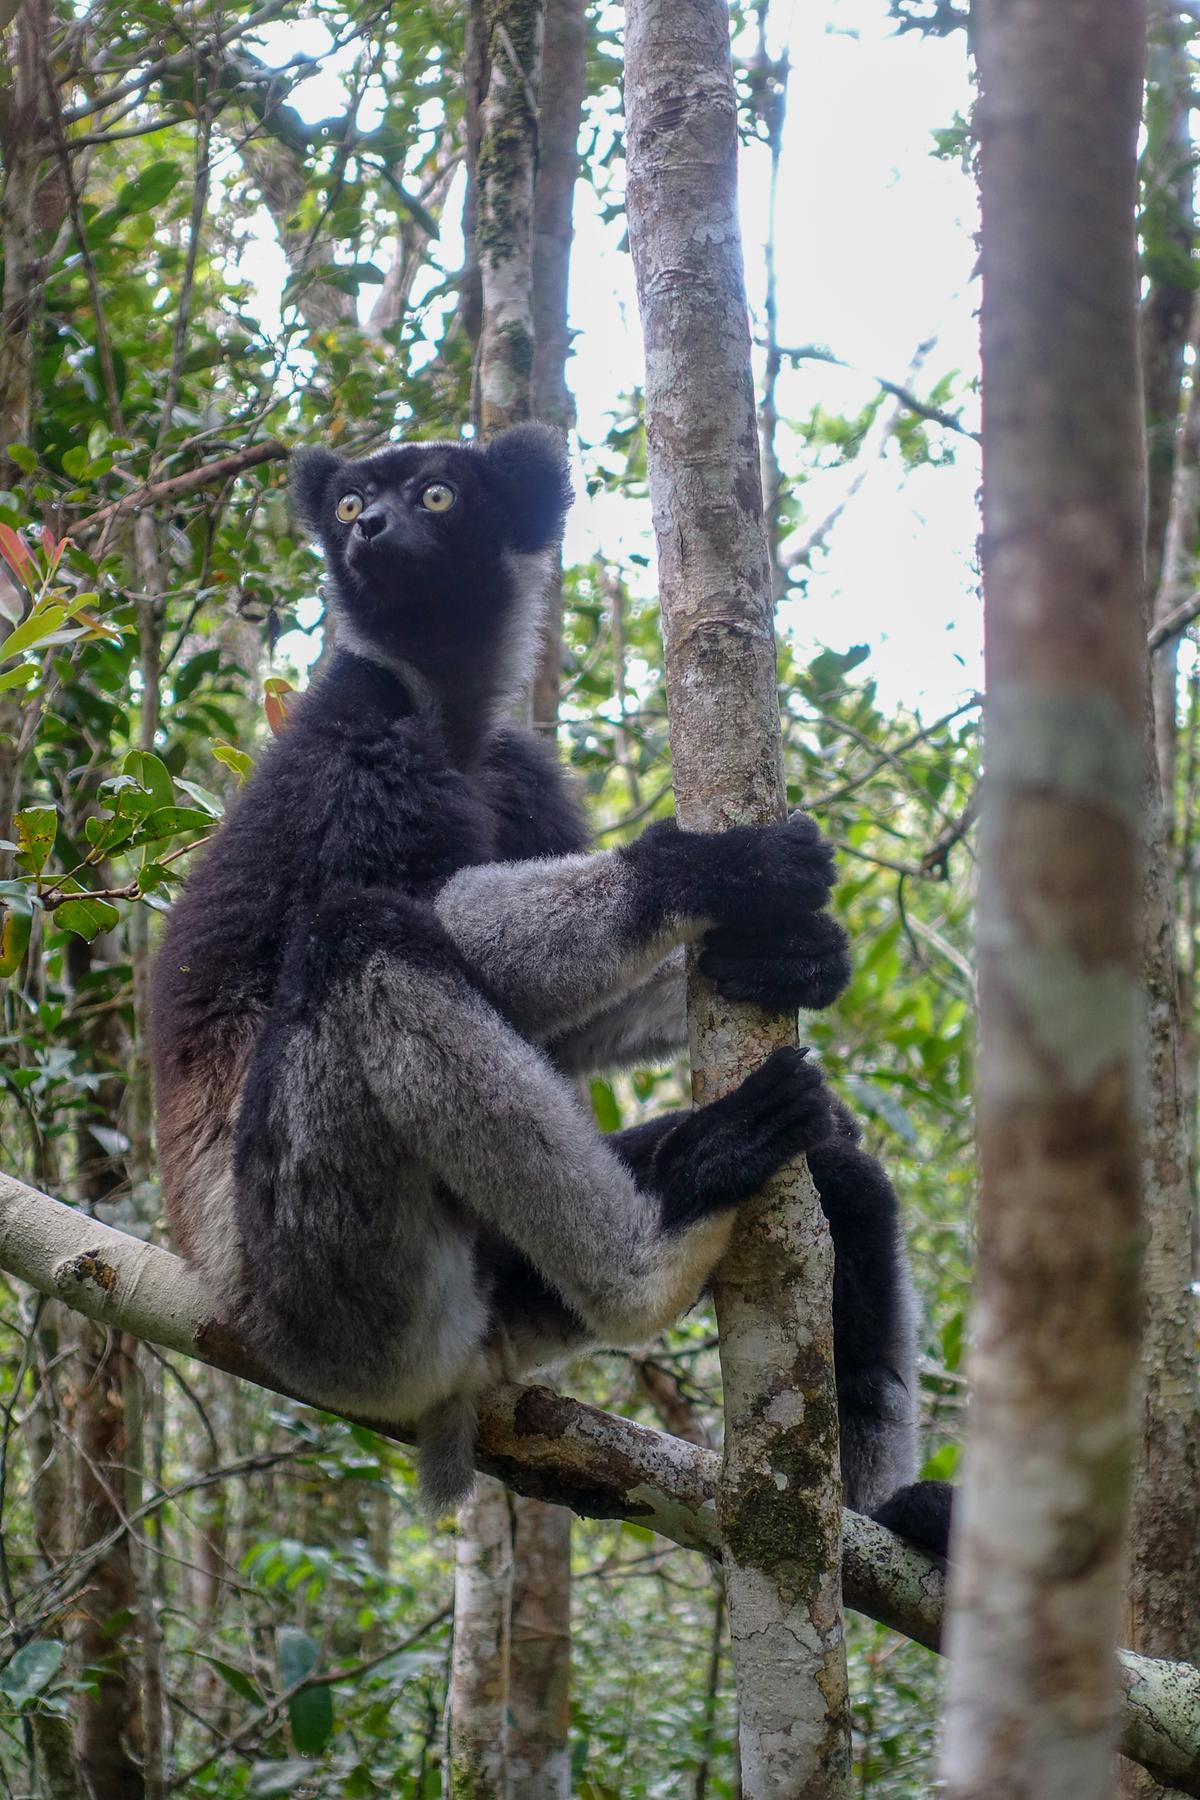 Ein großer Lemur sitzt auf einem Ast und hält sich mit Vorder- und Hinterpfoten an einem dünnen Baumstamm fest. Seine runden Augen sind bernsteinfarben, das Fell im Gesicht schwarz.